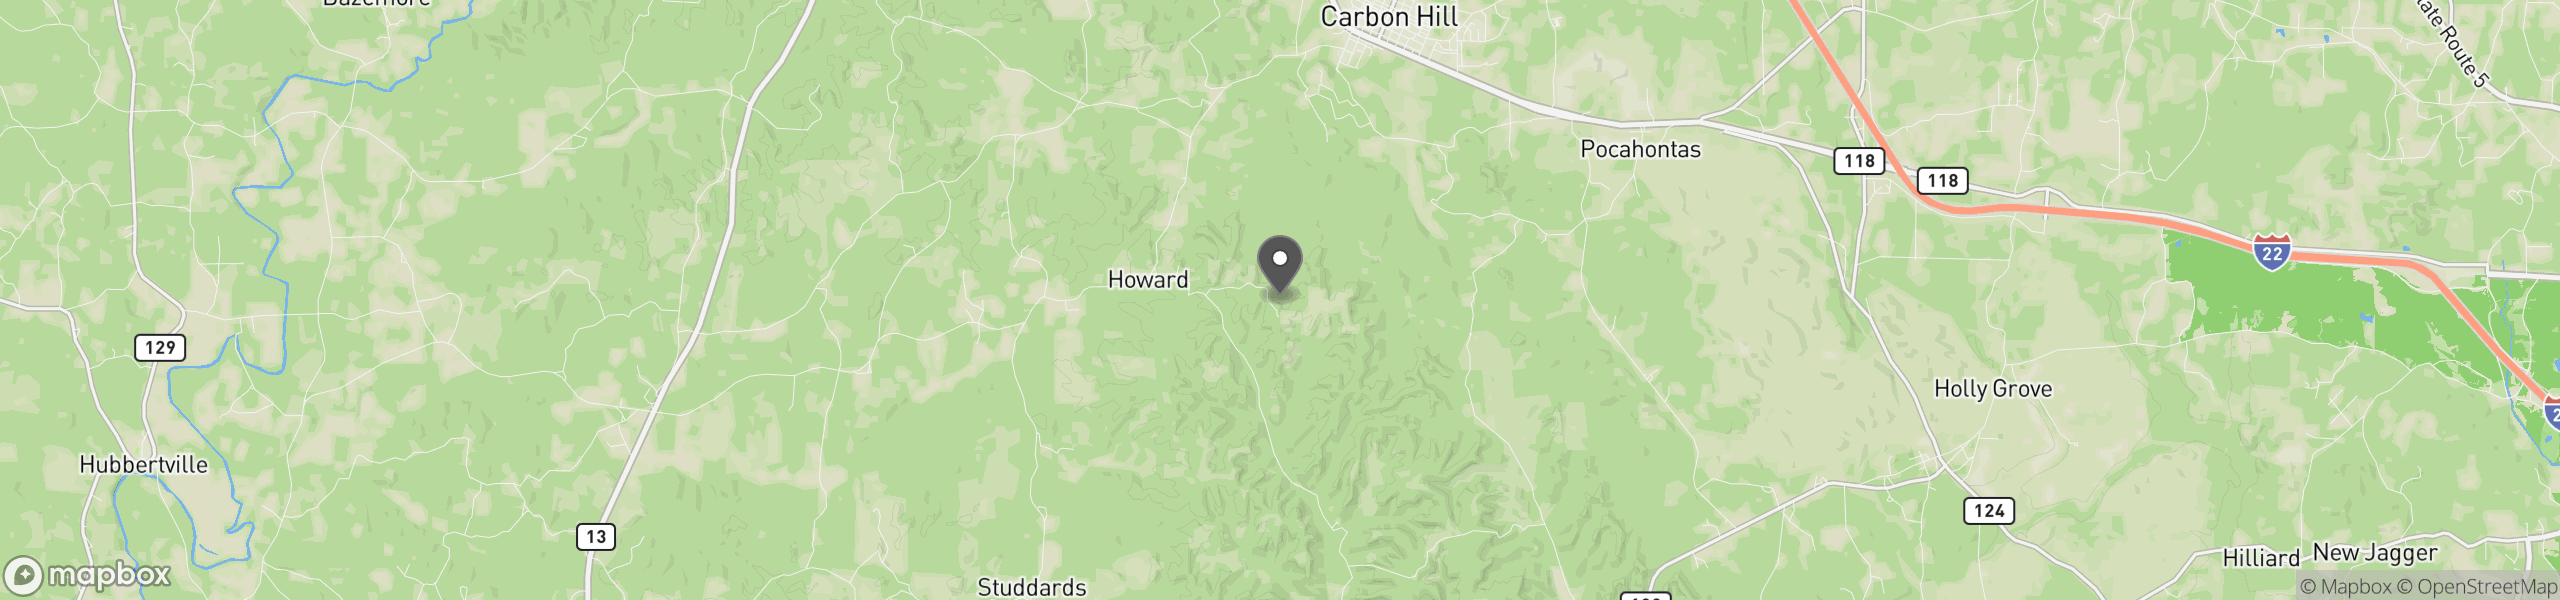 Carbon Hill, AL 35549